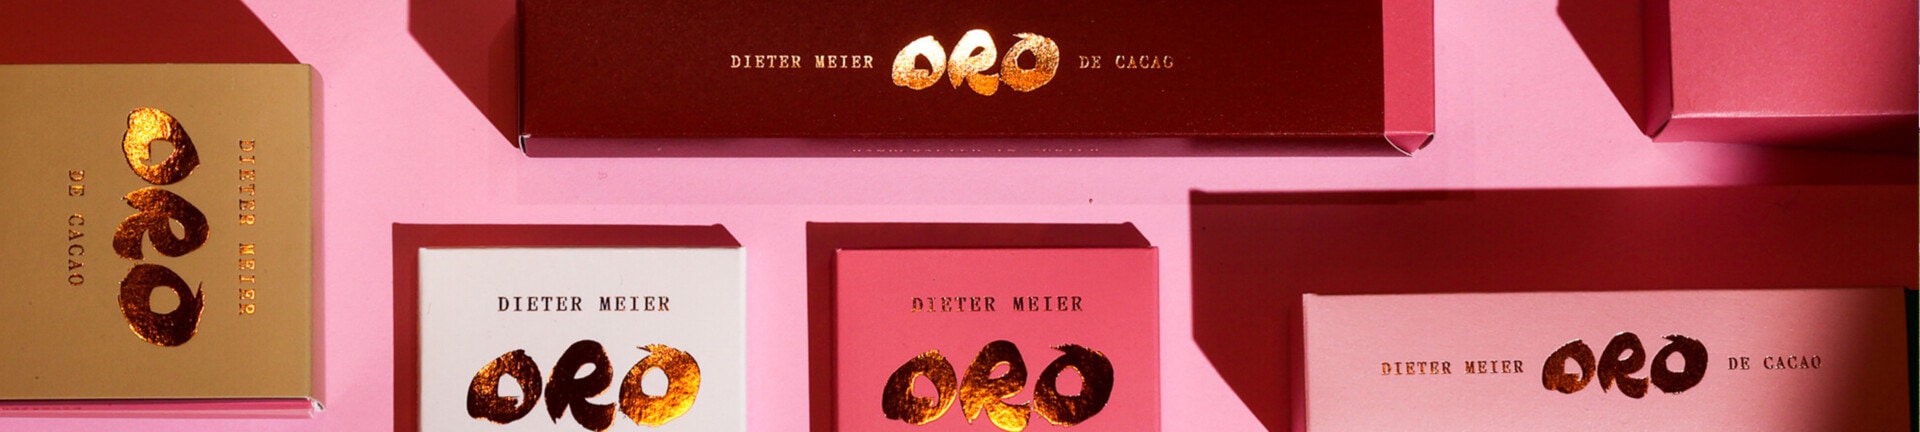 Neue Produktionsstätte für Dieter Meiers Oro de Cacao AG in Freienbach Featured Image